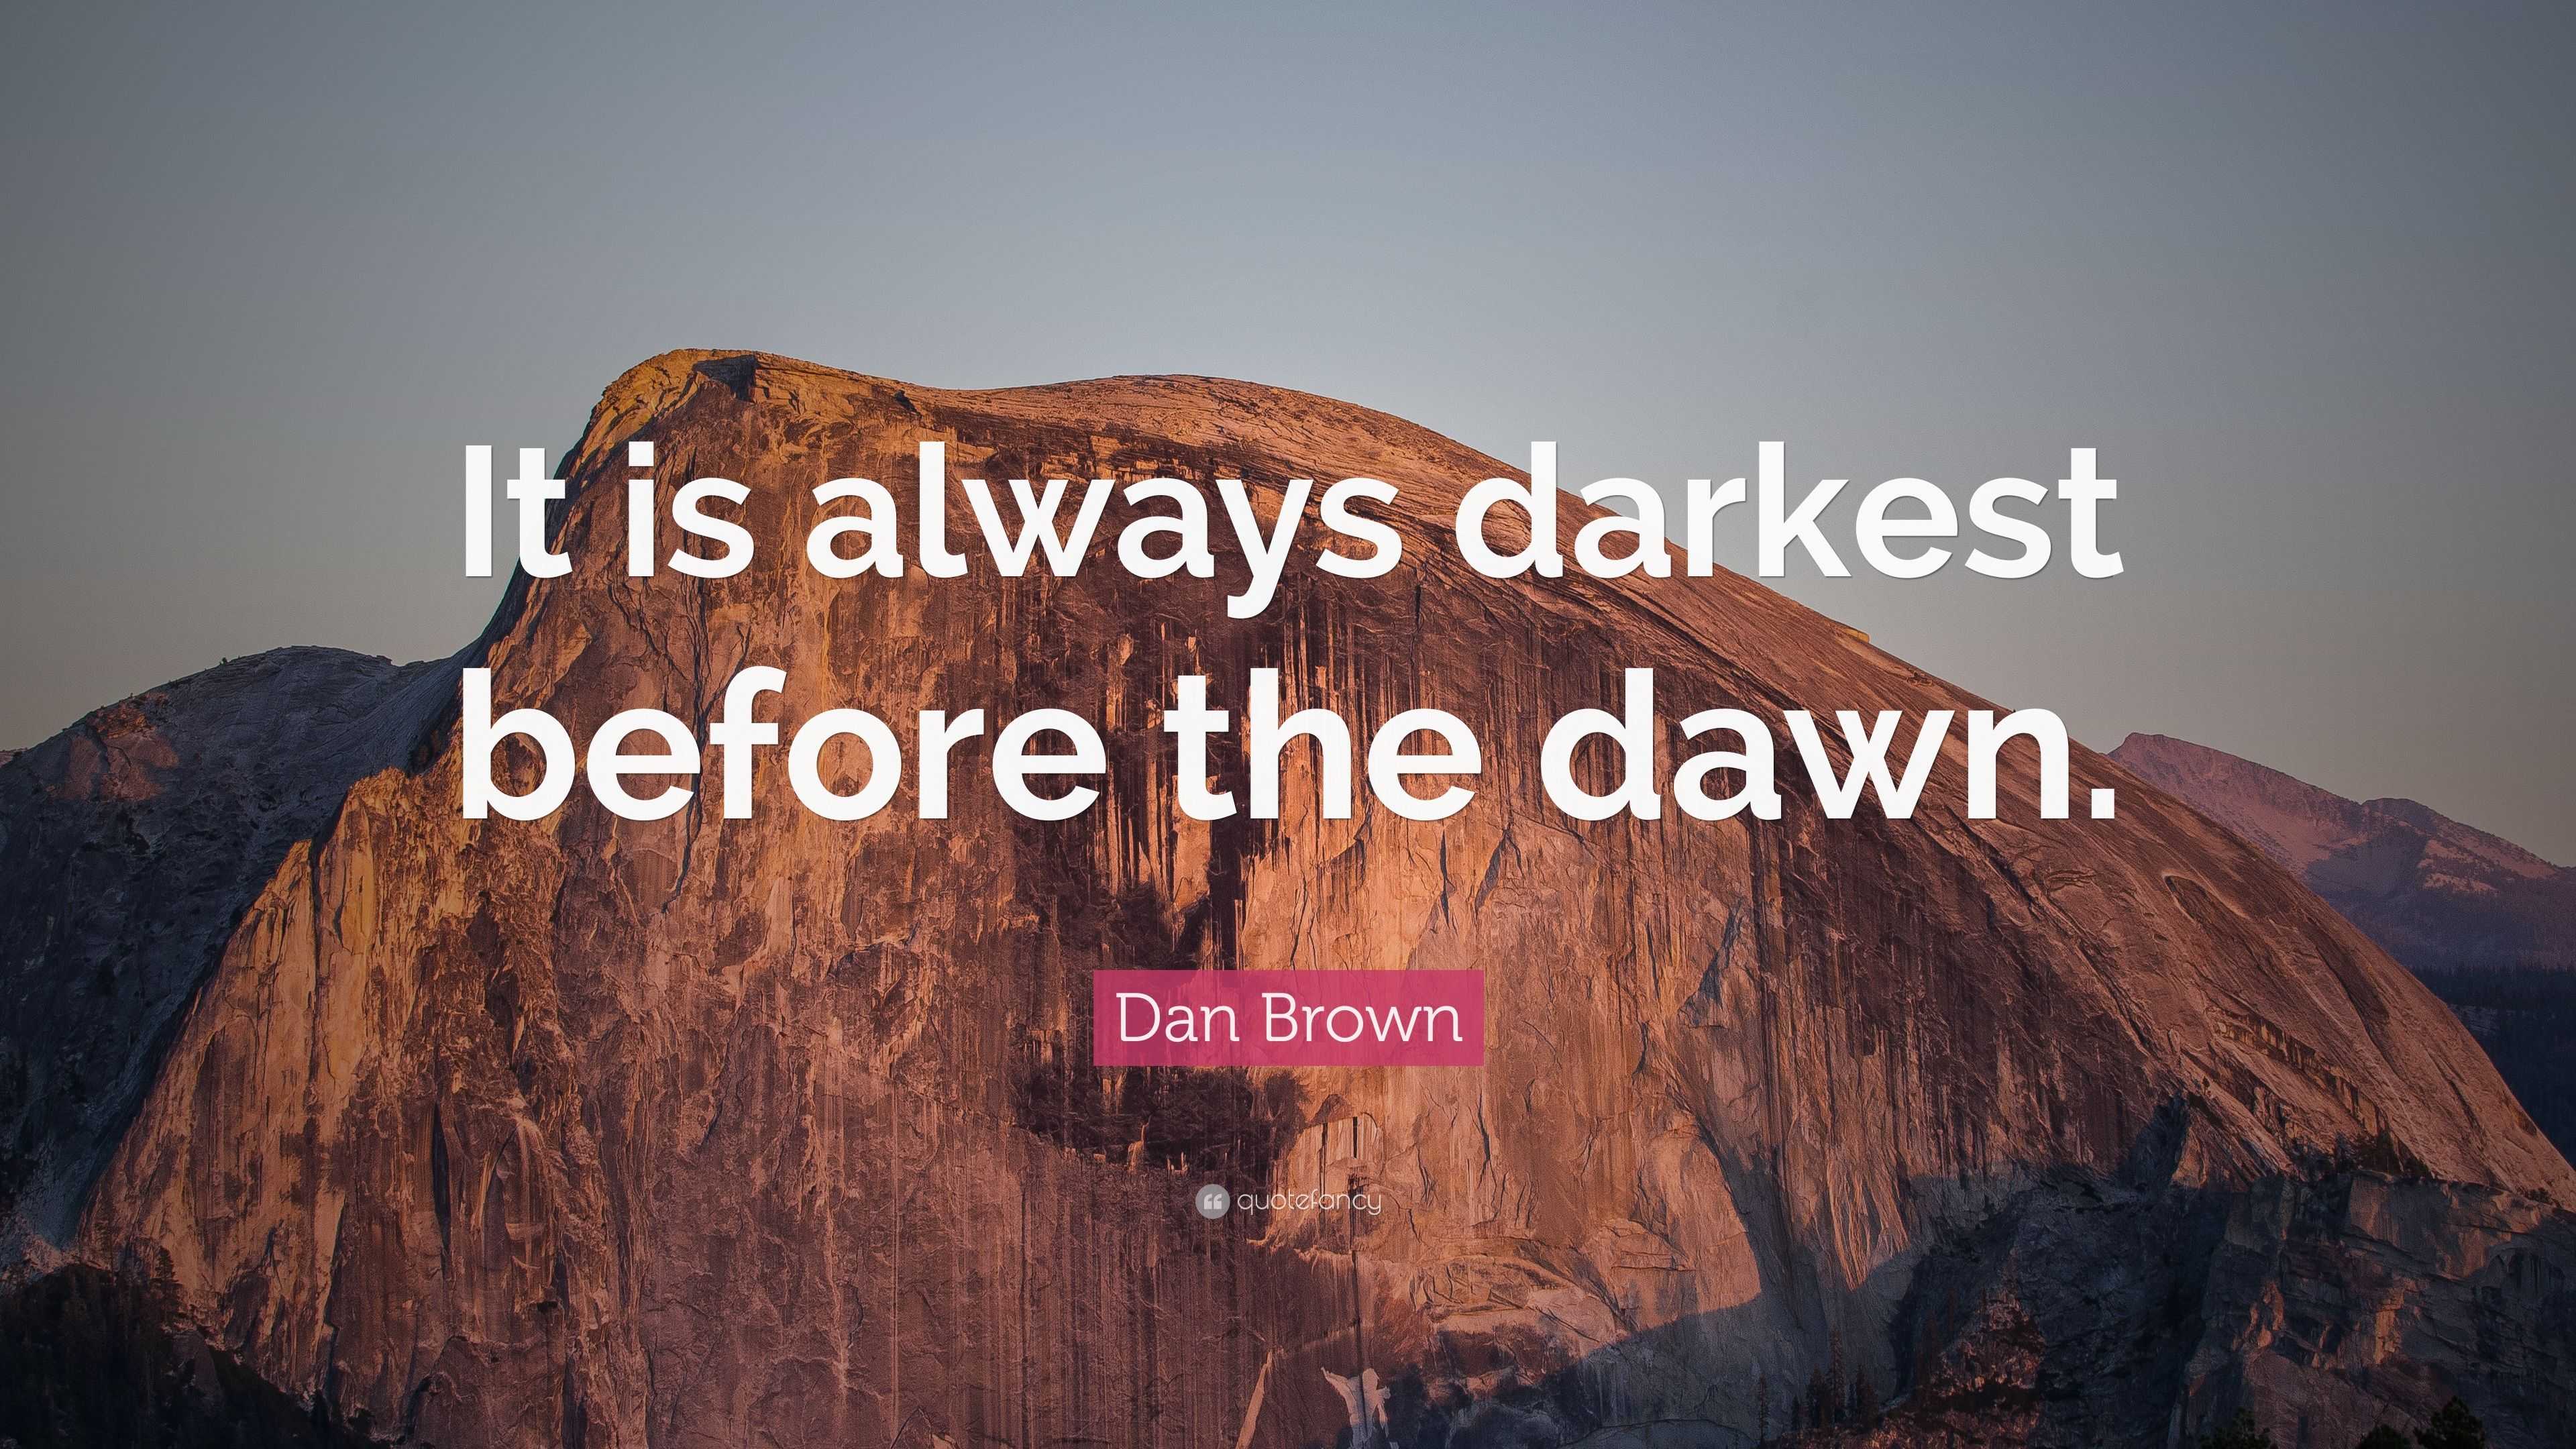 Dan Brown Quote: “It is always darkest before the dawn.”